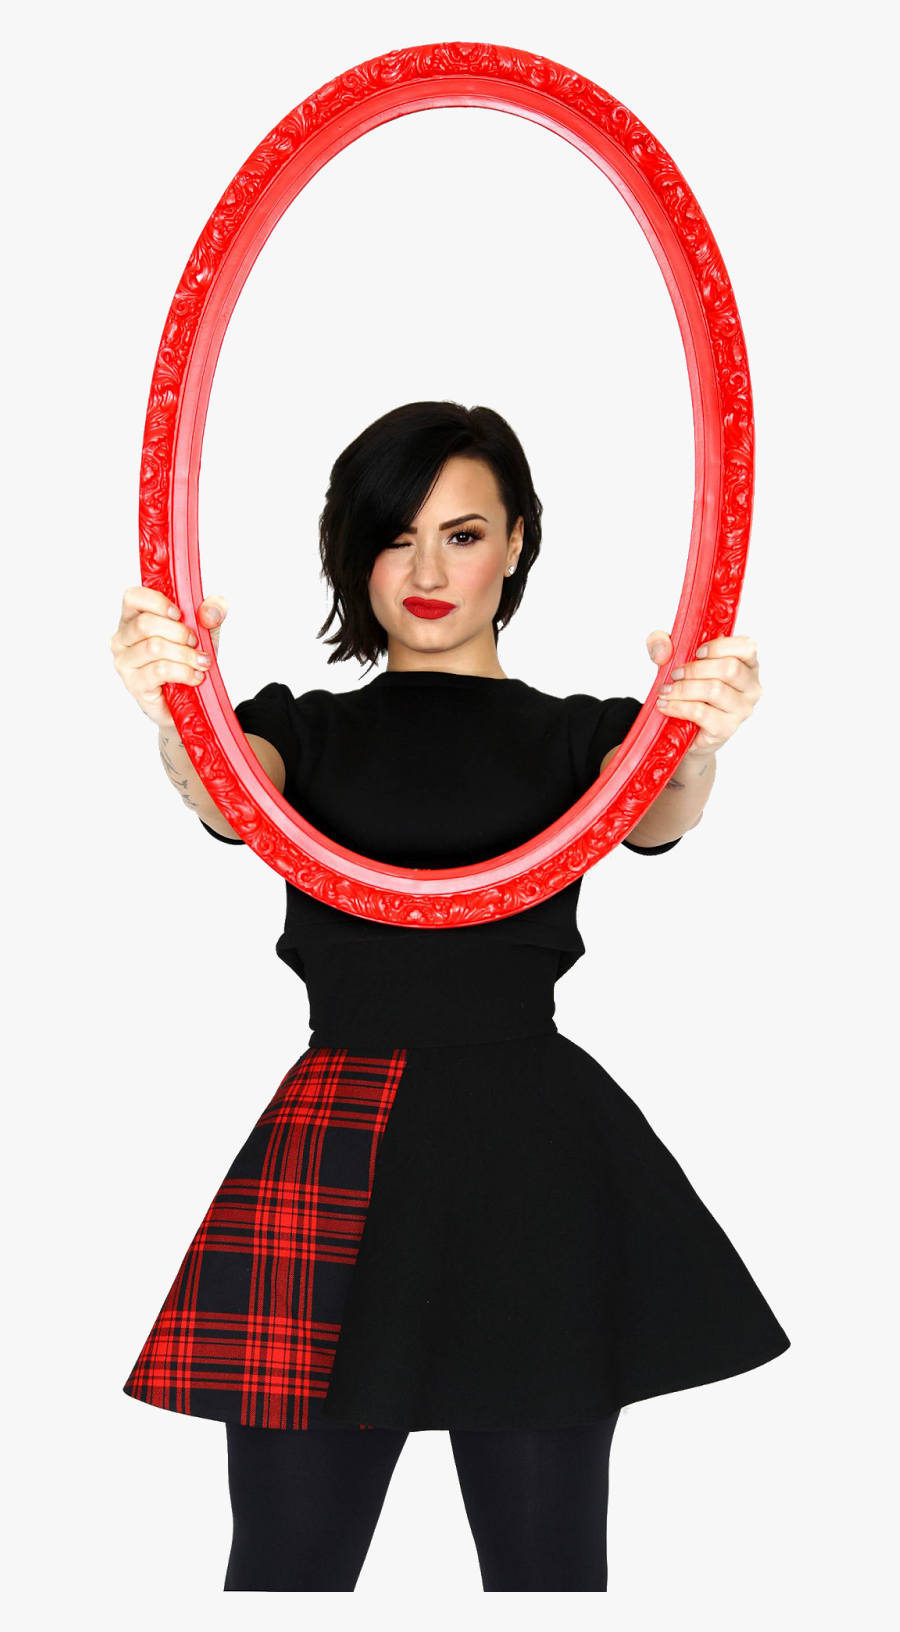 Clip Art Barney And Friends Demi Lovato - Png De Demi Lovato 2015, Transparent Clipart